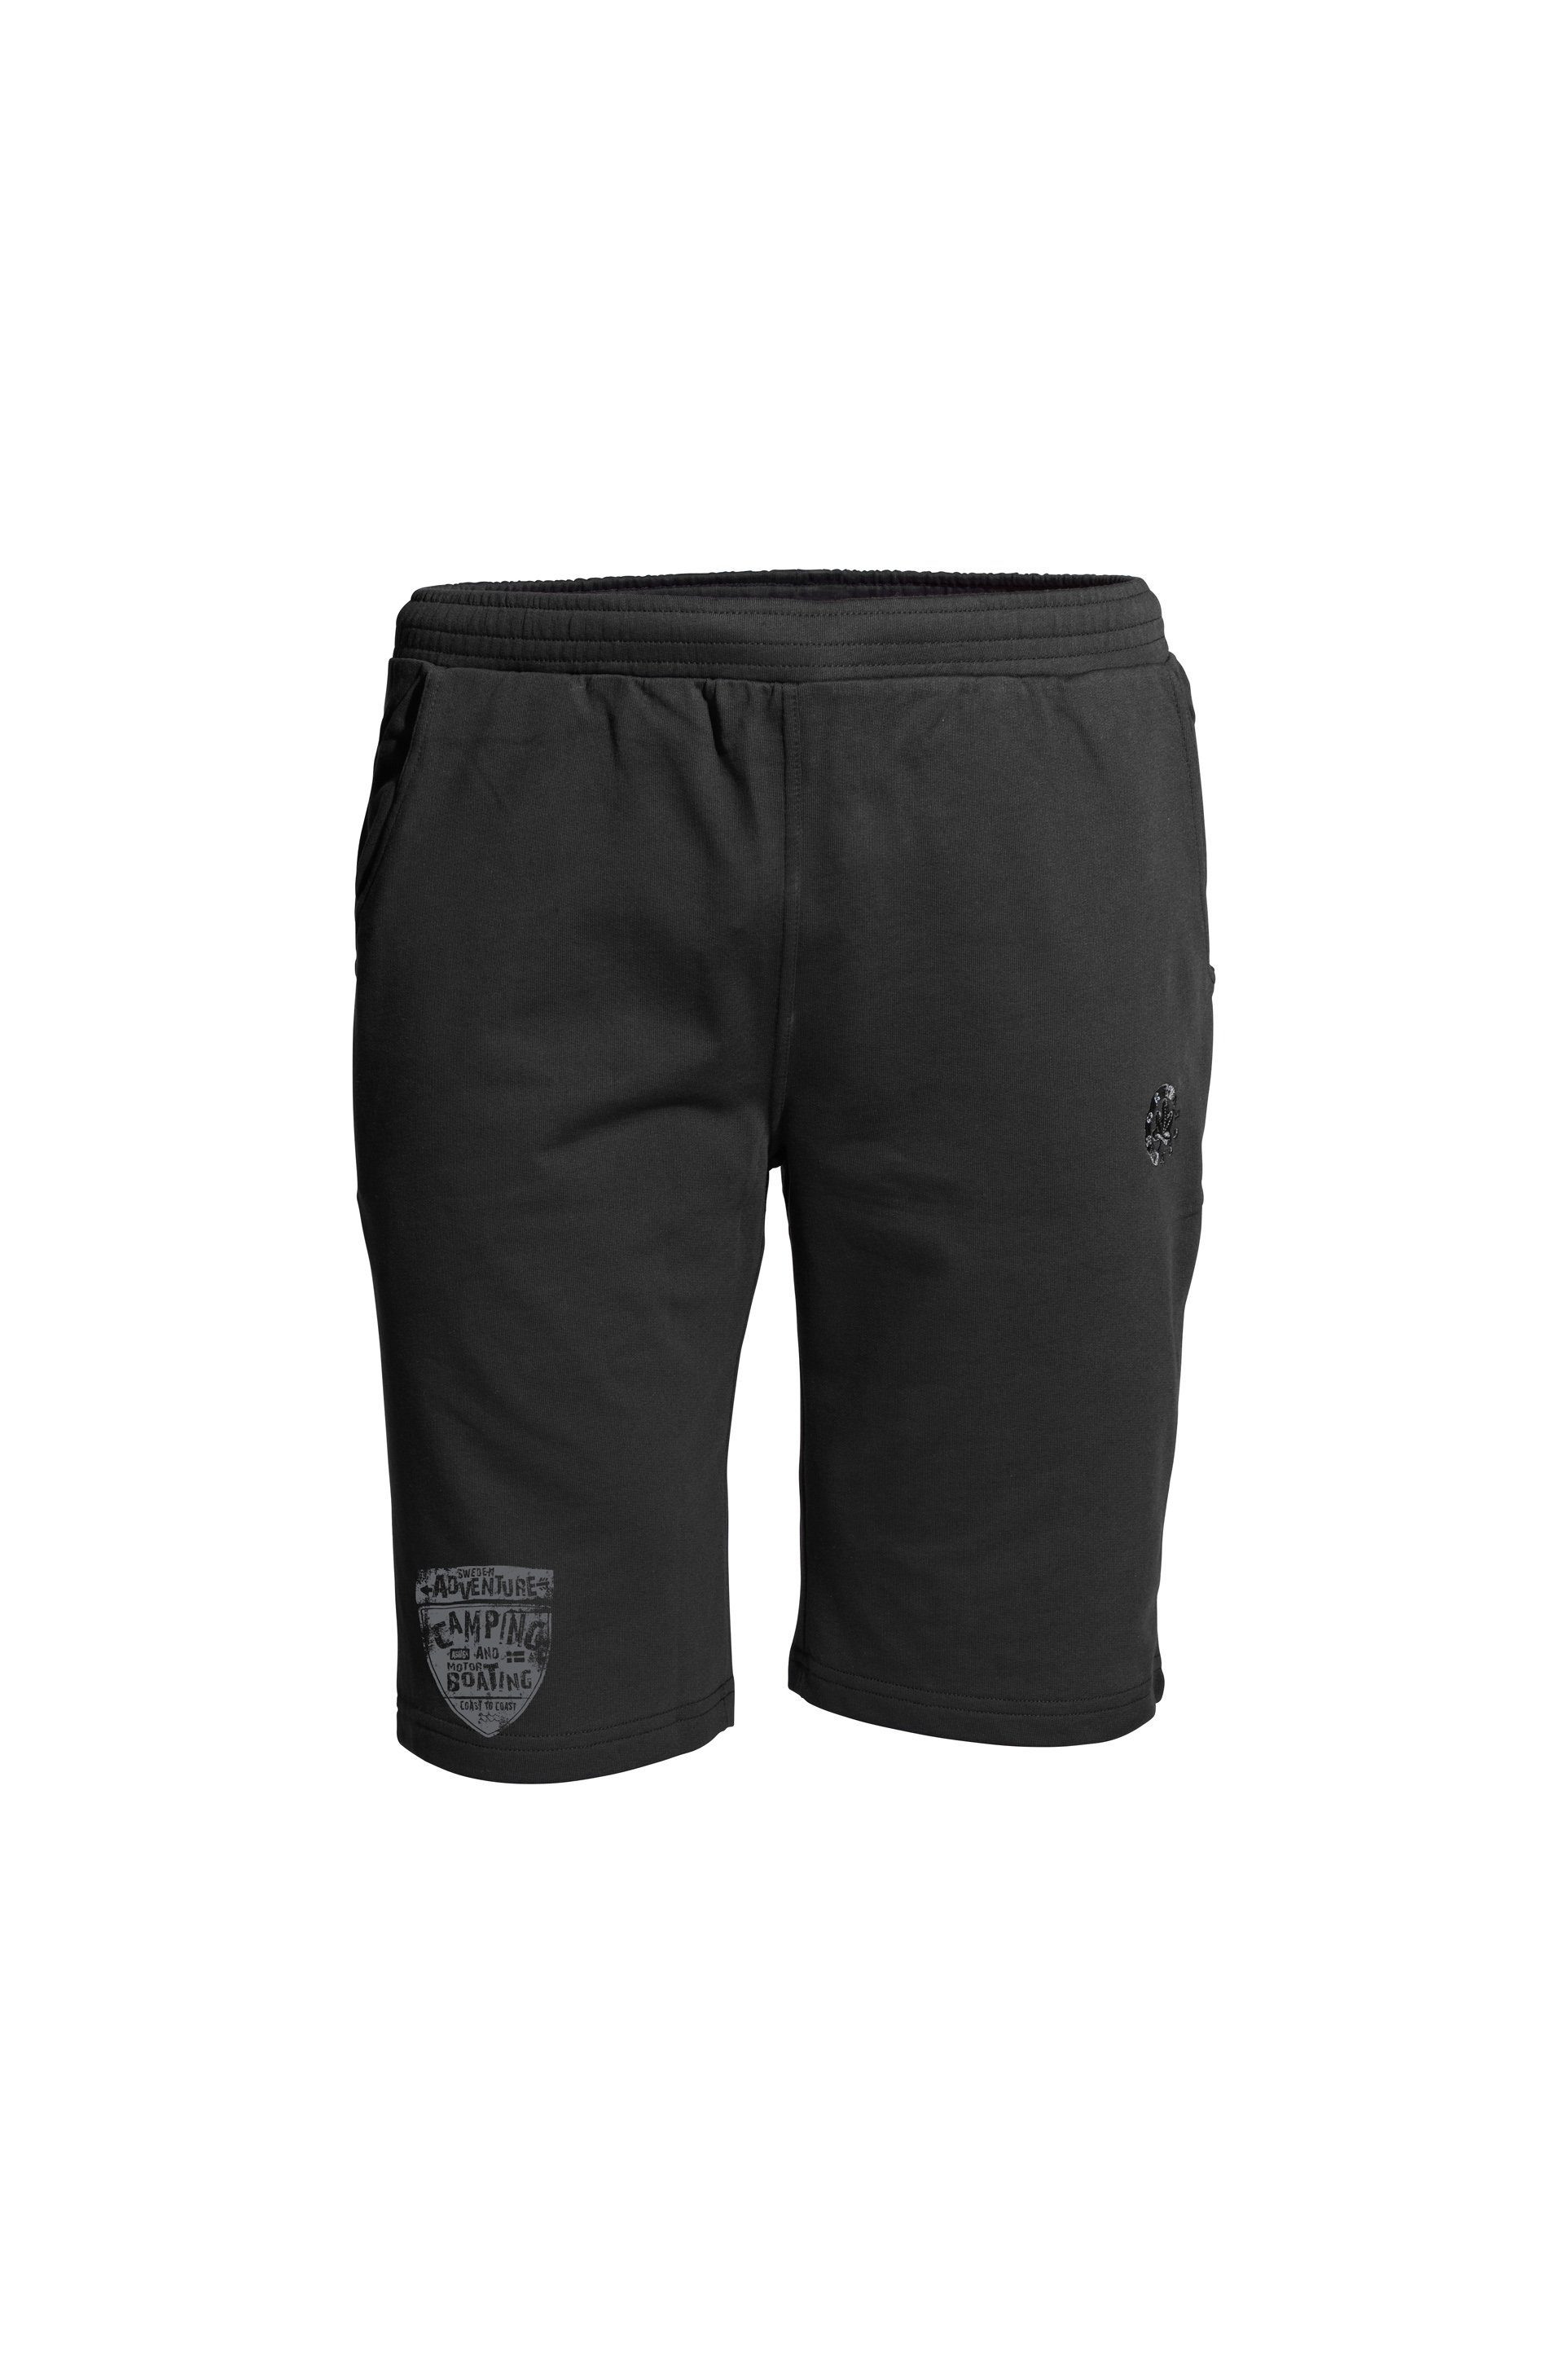 AHORN SPORTSWEAR Shorts CAMPING mit sportlichem Print am Bein schwarz